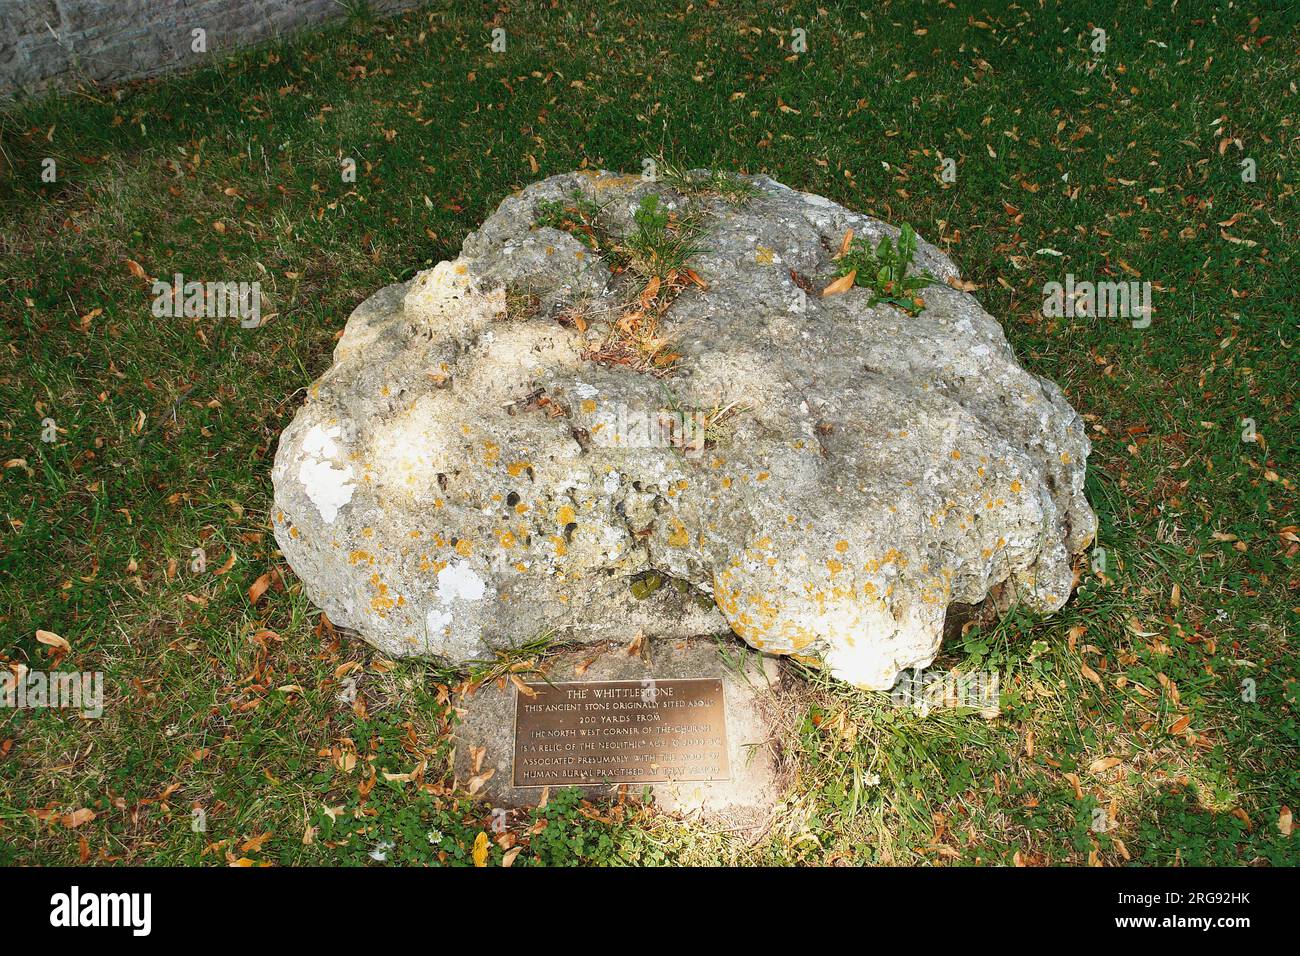 The Whittlestone, ein stehender Stein oder Menhir in Lower Swell, nahe Chipping Norton, Gloucestershire. Es ist auch bekannt als Whistlestone, Wissel Stone und Wittelstone. Die Tafel erklärt, dass der Stein ein Relikt der Jungsteinzeit ist, etwa 2000 v. Chr., und eine Verbindung zu menschlichen Begräbnissen hat. Stockfoto